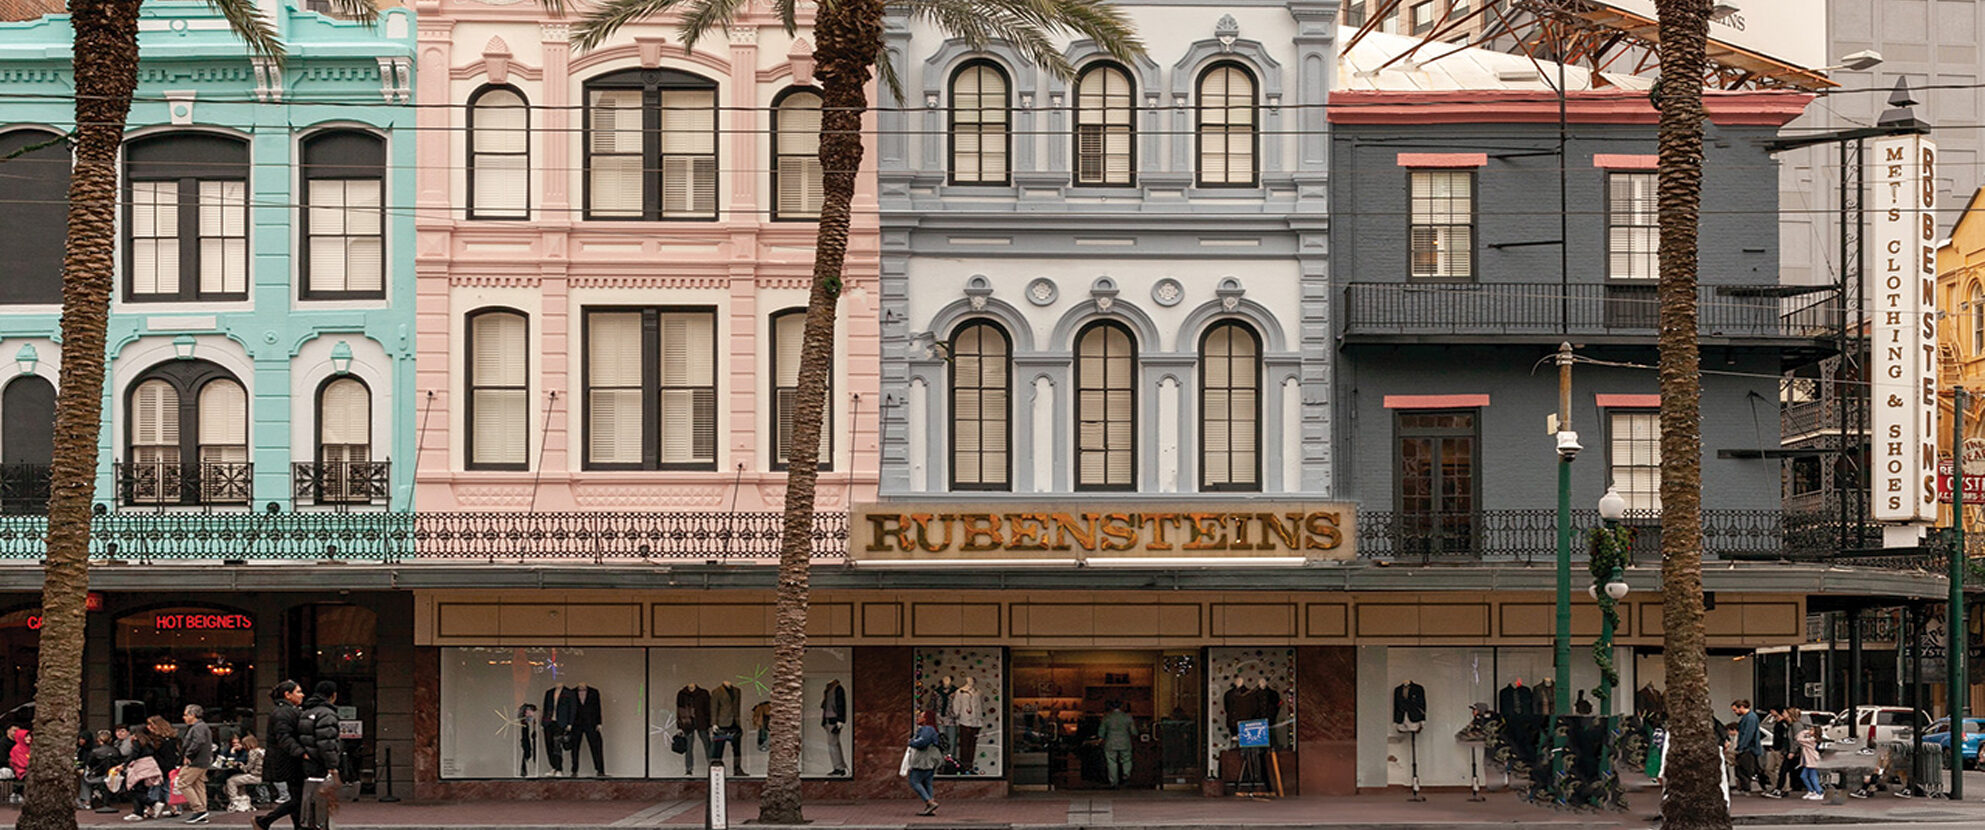 Rubensteins New Orleans - About Us